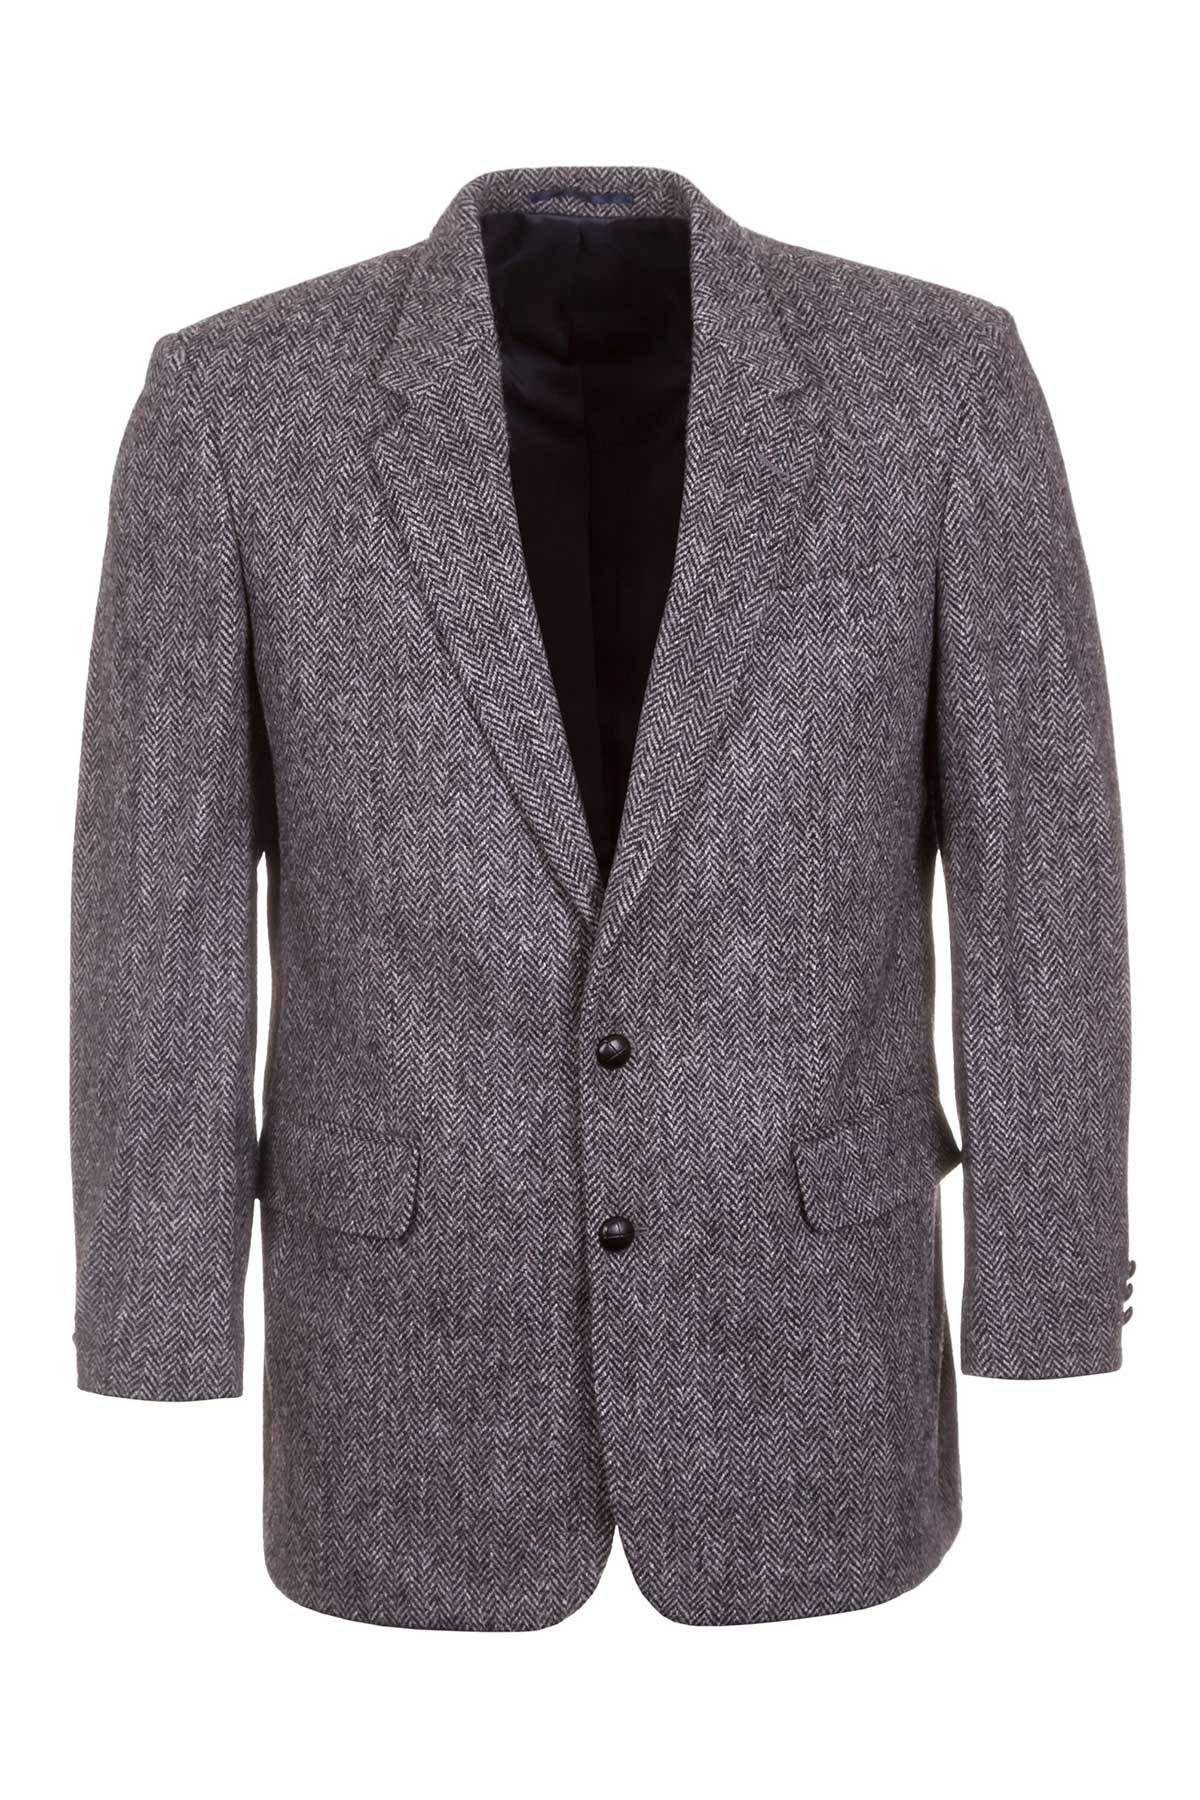 Men's Harris Tweed Blazer UK | Wool Tweed Jackets | Rydale